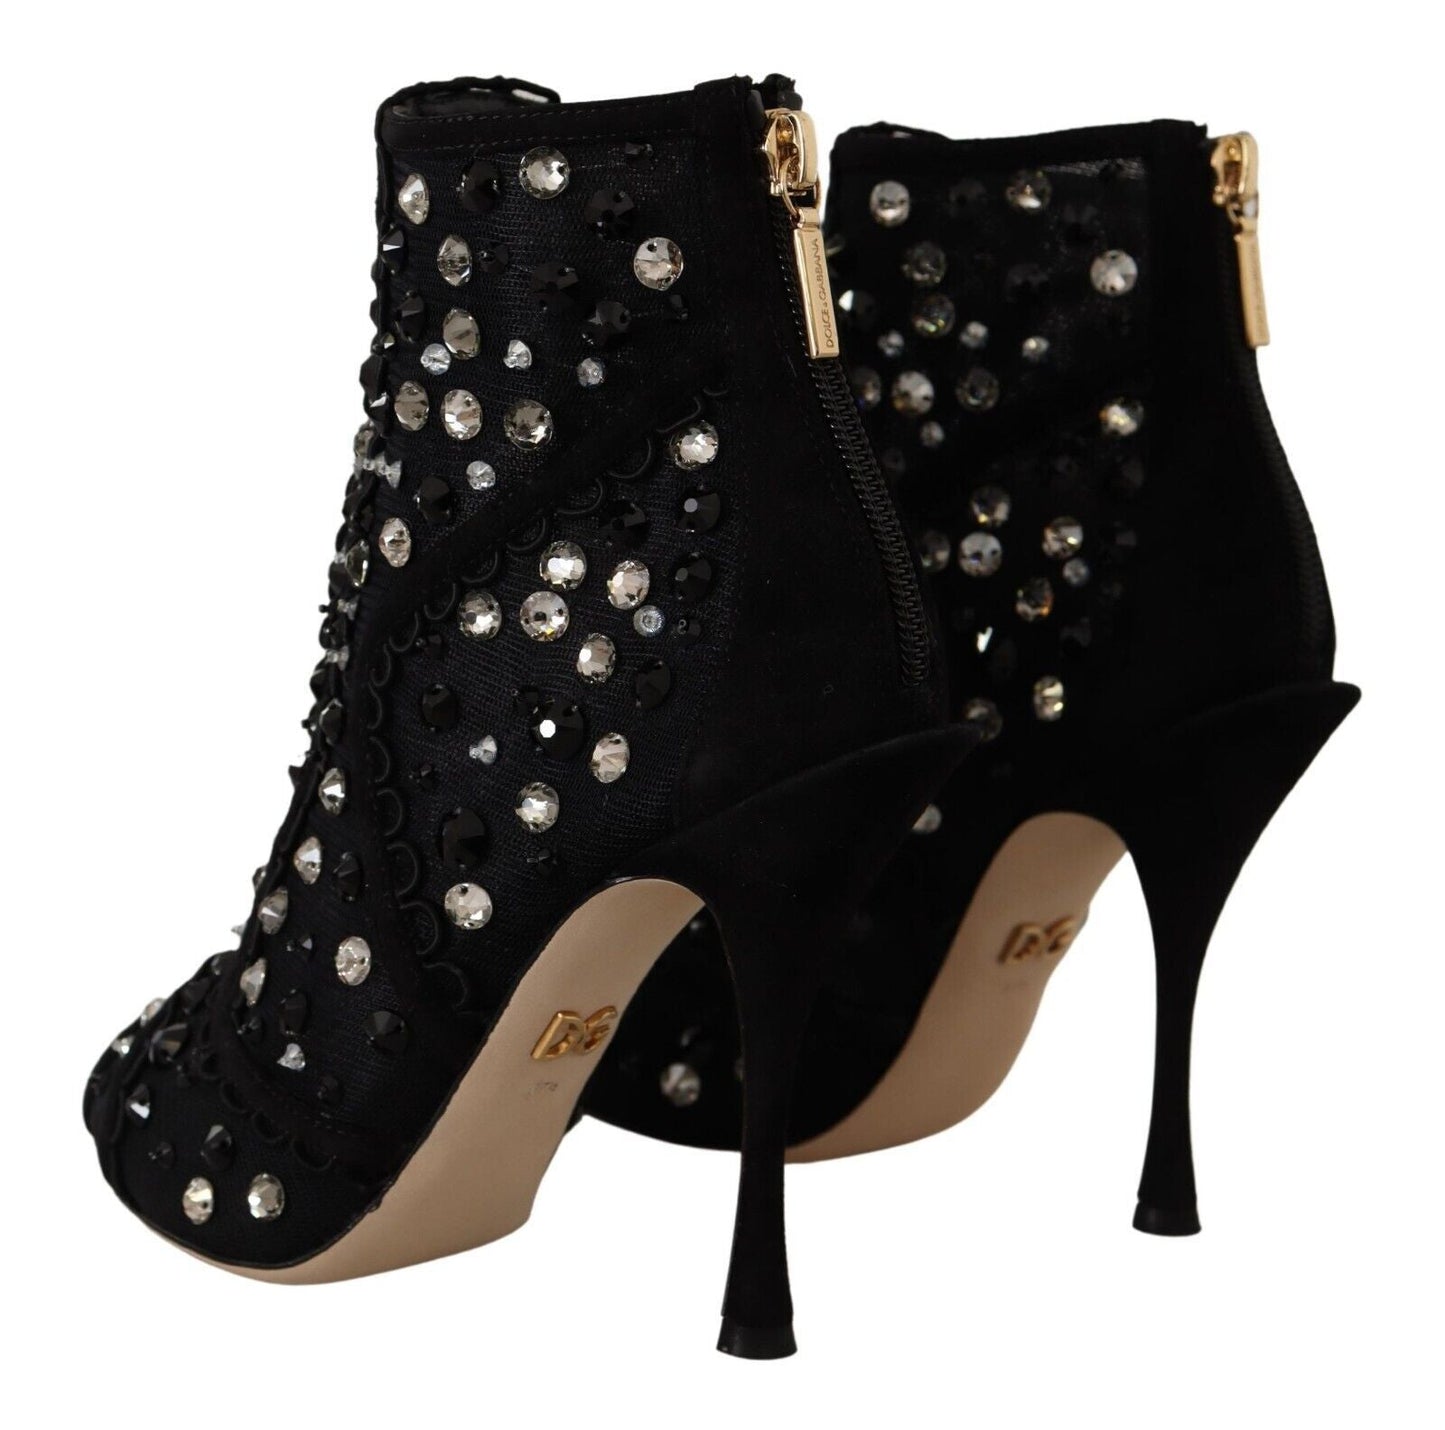 Dolce & Gabbana Black Crystals Heels Zipper Short Boots | Fashionsarah.com